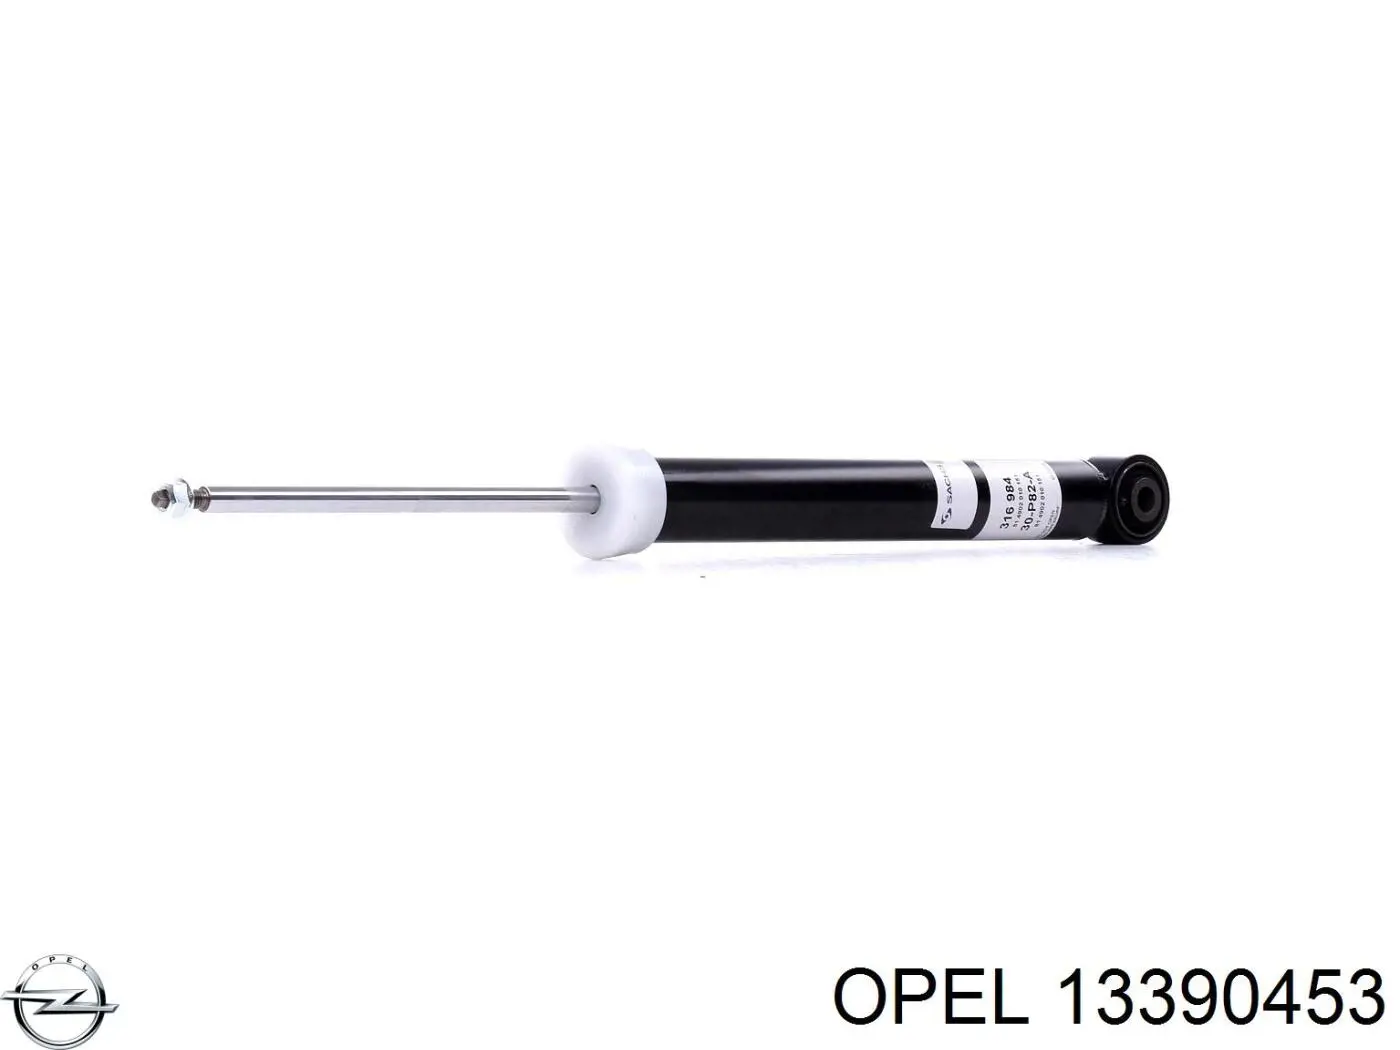 13390453 Opel